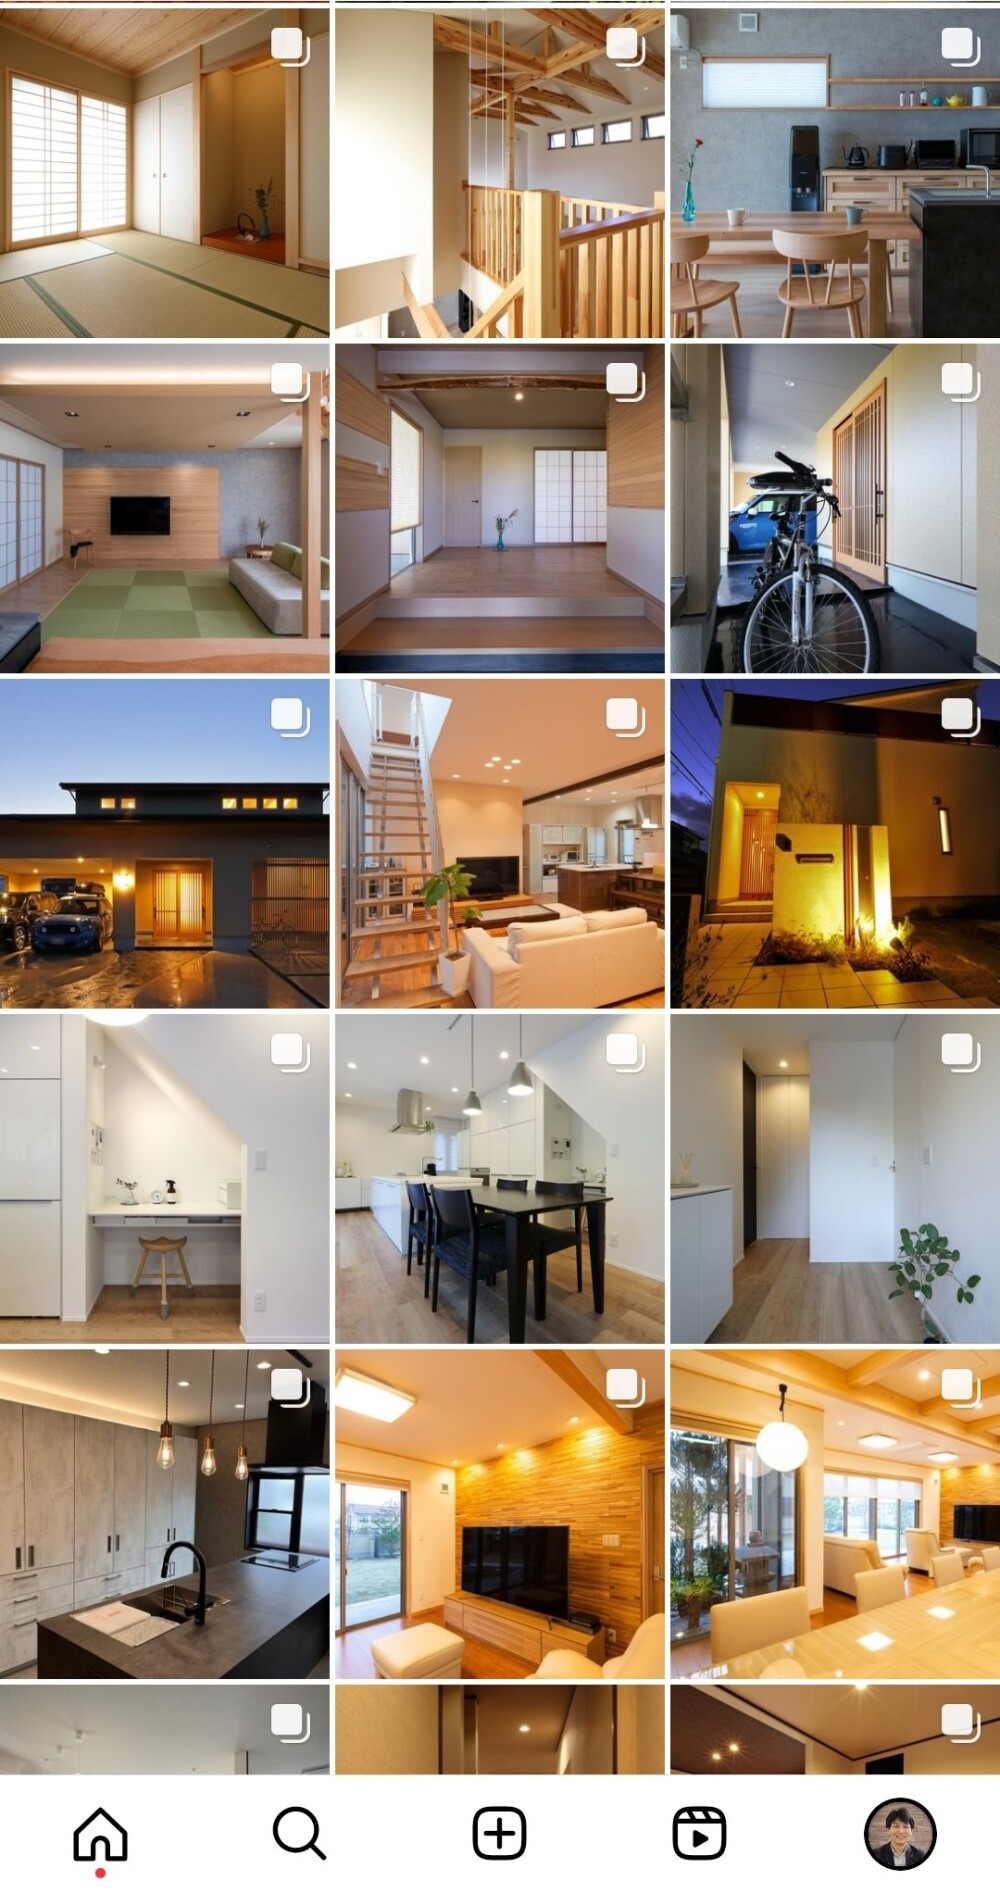 画像検索とInstagramでオシャレな住まいの見本を検索する傾向、和モダンの暮らしと生活の心地良さを提案する奈良県の設計時事務所からのデザイン提案のSNS